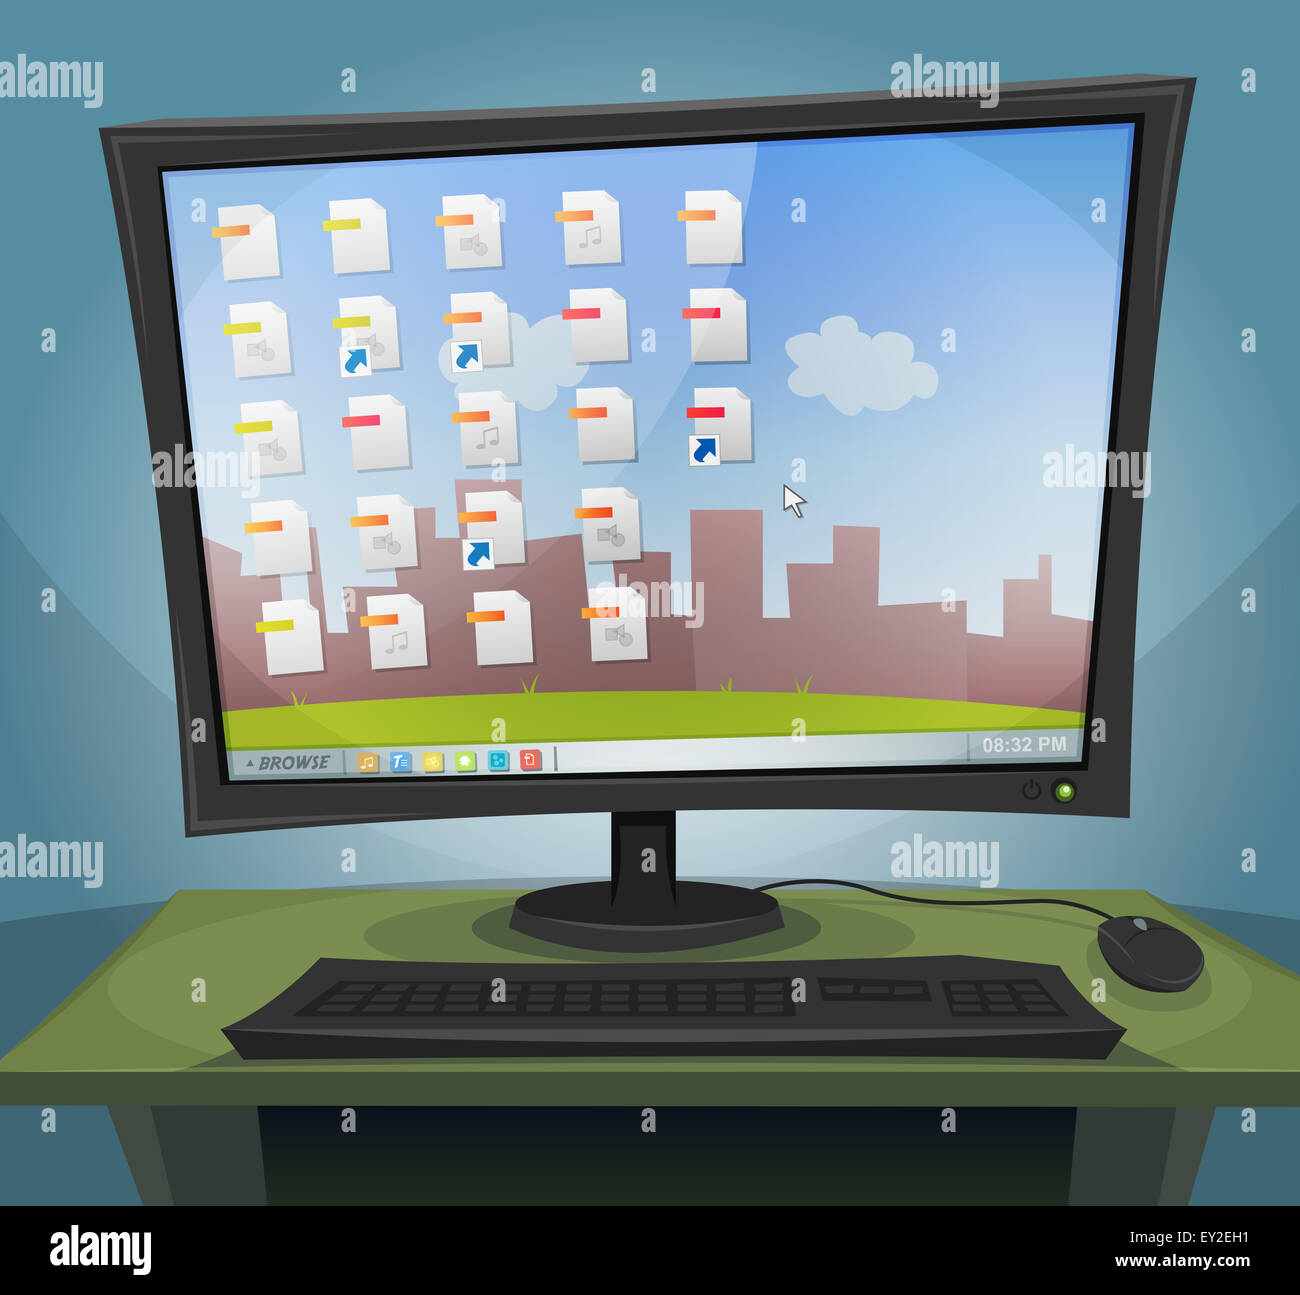 Illustrazione di un cartone animato sul computer desktop durante la notte, con schermo acceso, all'interno dei file icone, cartelle e paesaggio di sfondo Foto Stock